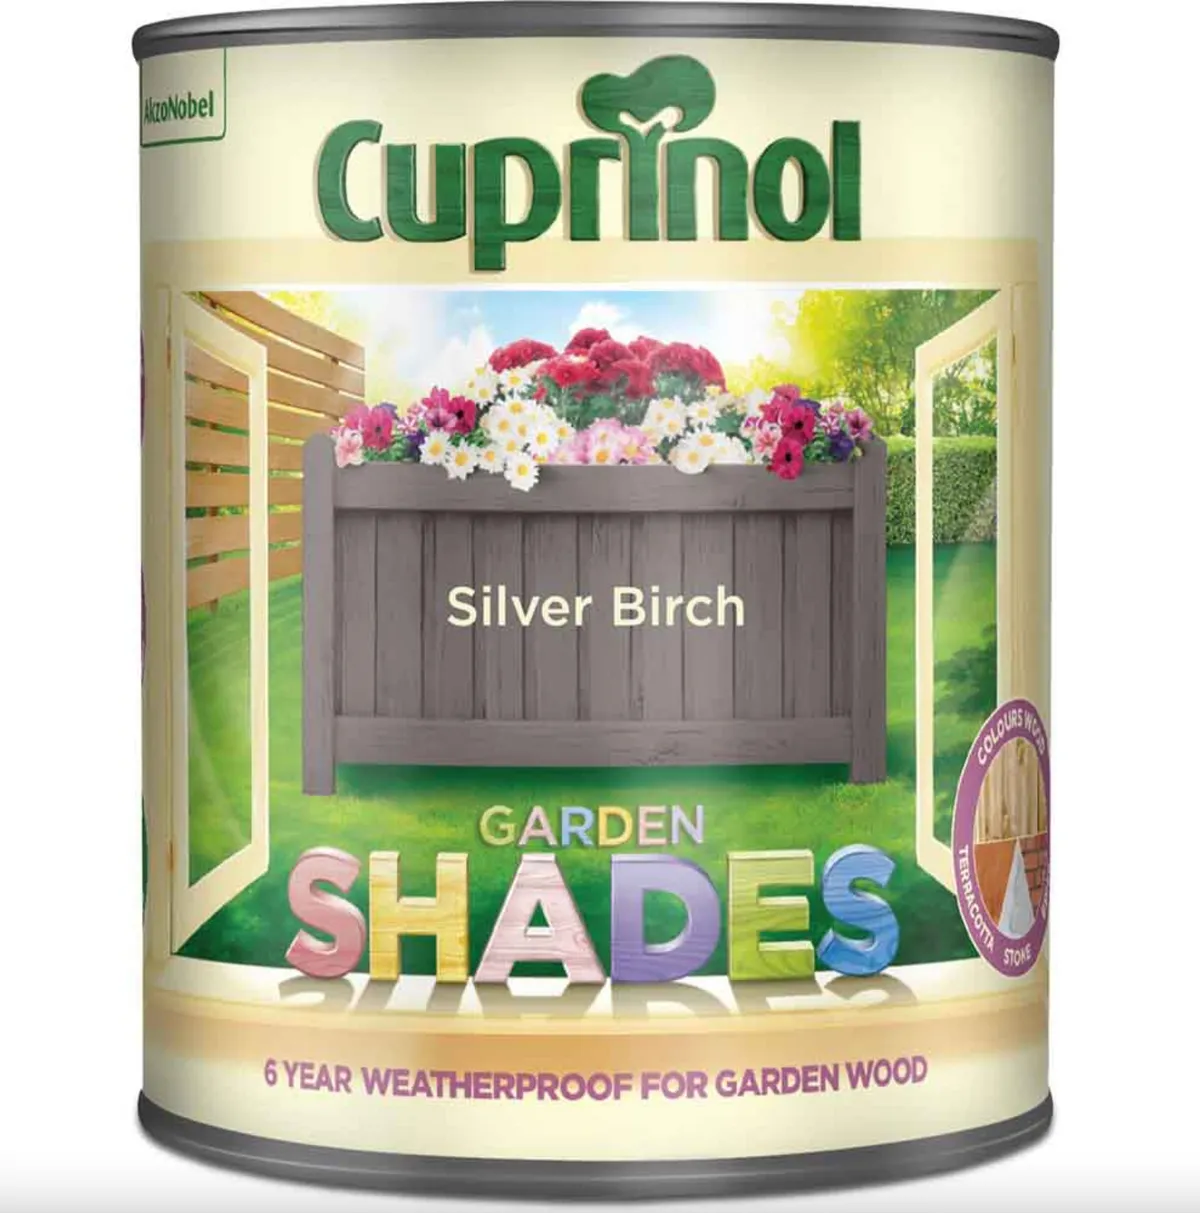 Cuprinol Garden Shades Silver Birch